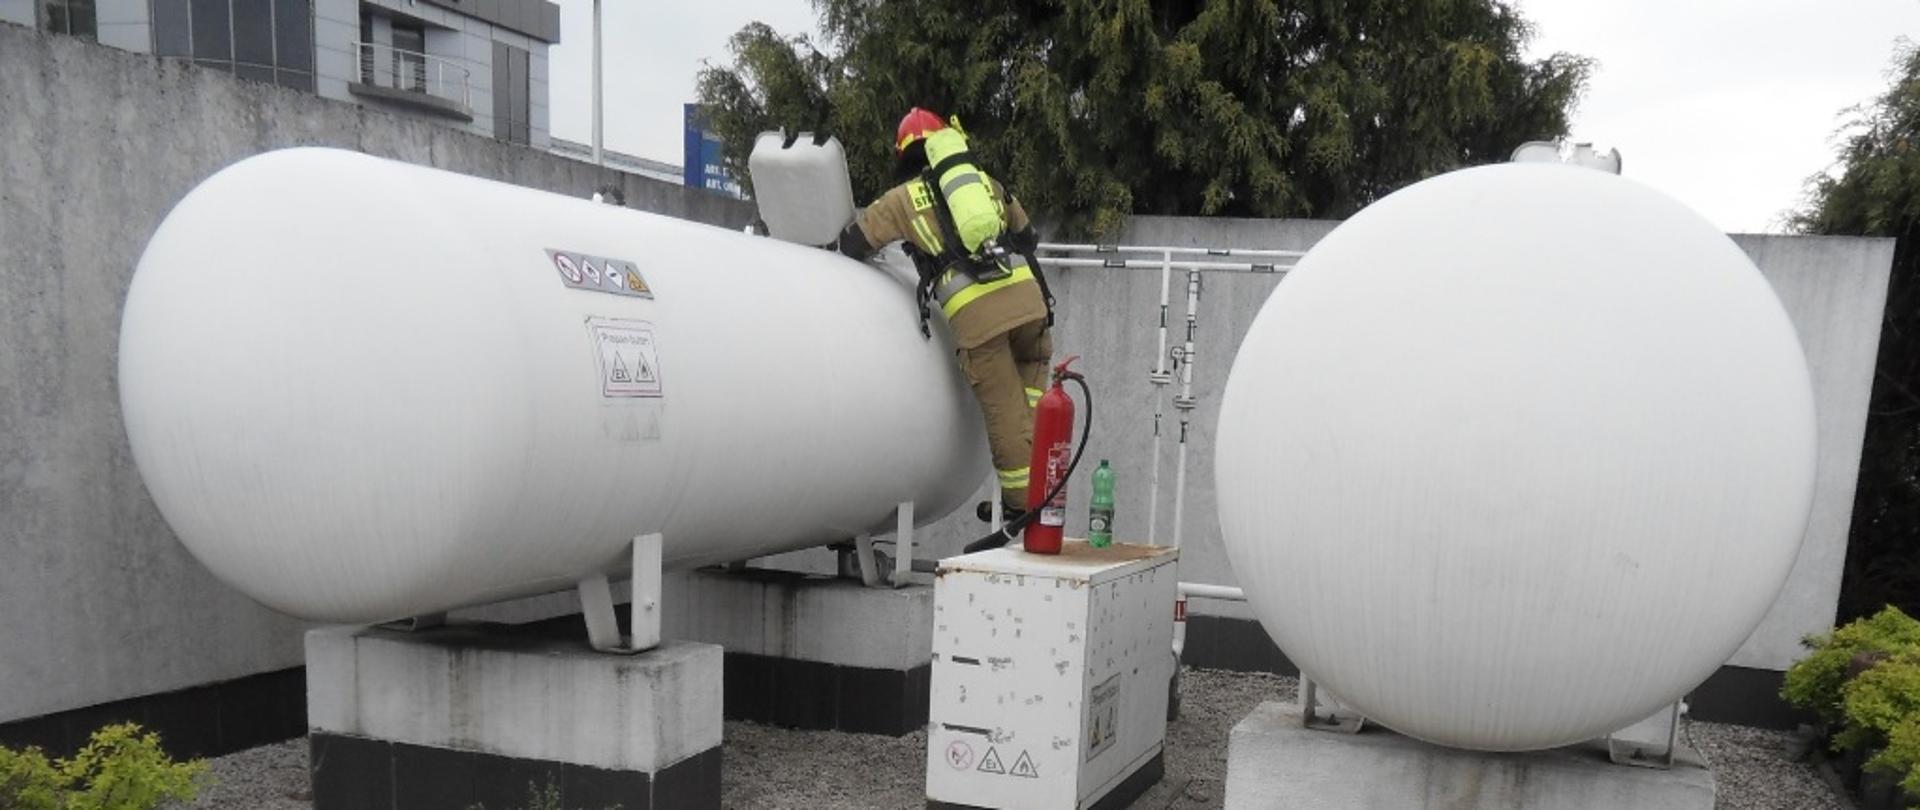 Na zdjęciu dwa zbiorniki z gazem LPG, w jednym ze zbiorników strażak uszczelniający uszkodzony manometr przy użyciu zwilżonej tkaniny i gaśnicy śniegowej